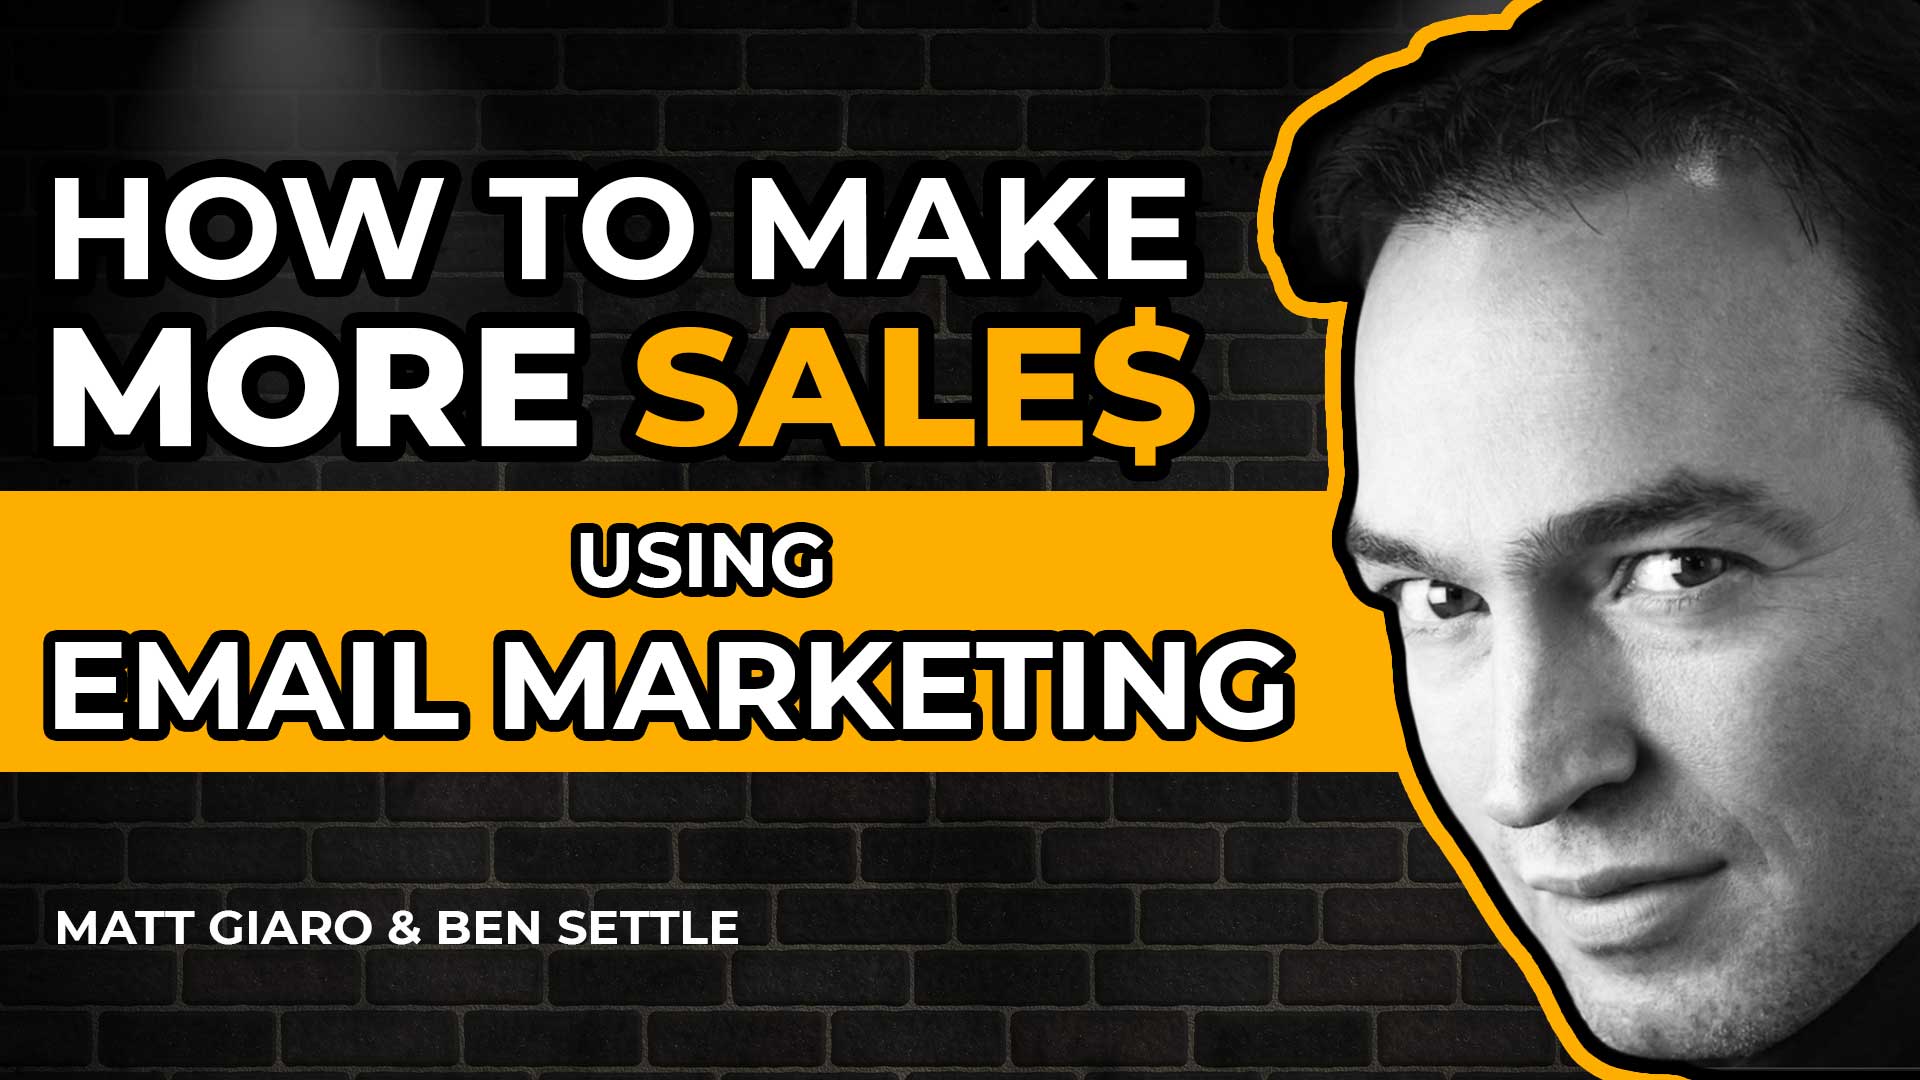 Ben Settle Interview Around Email Marketing